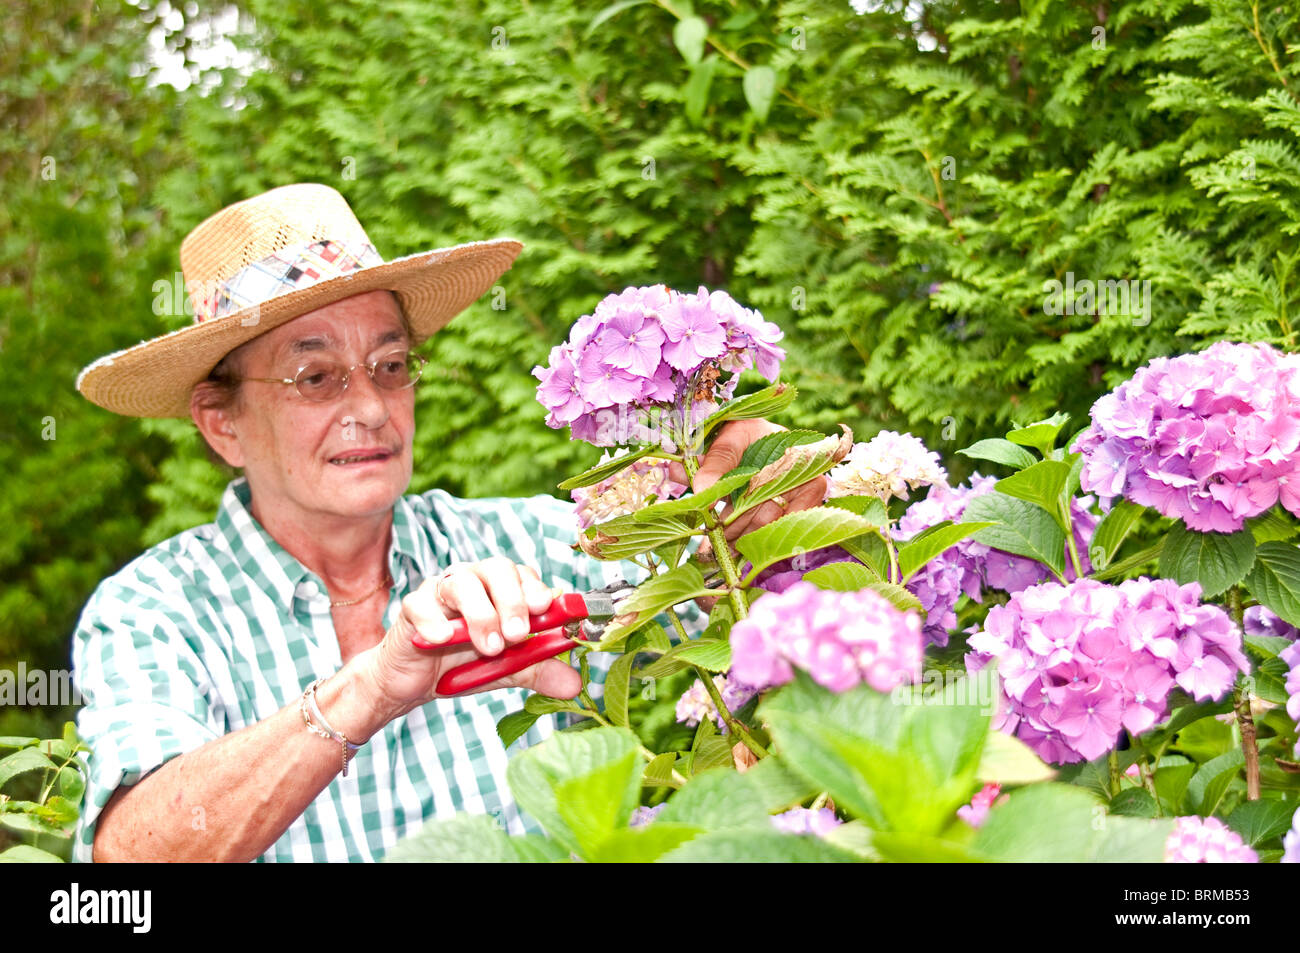 Elderly Woman working in the garden; ältere frau arbeitet im garten Stock Photo